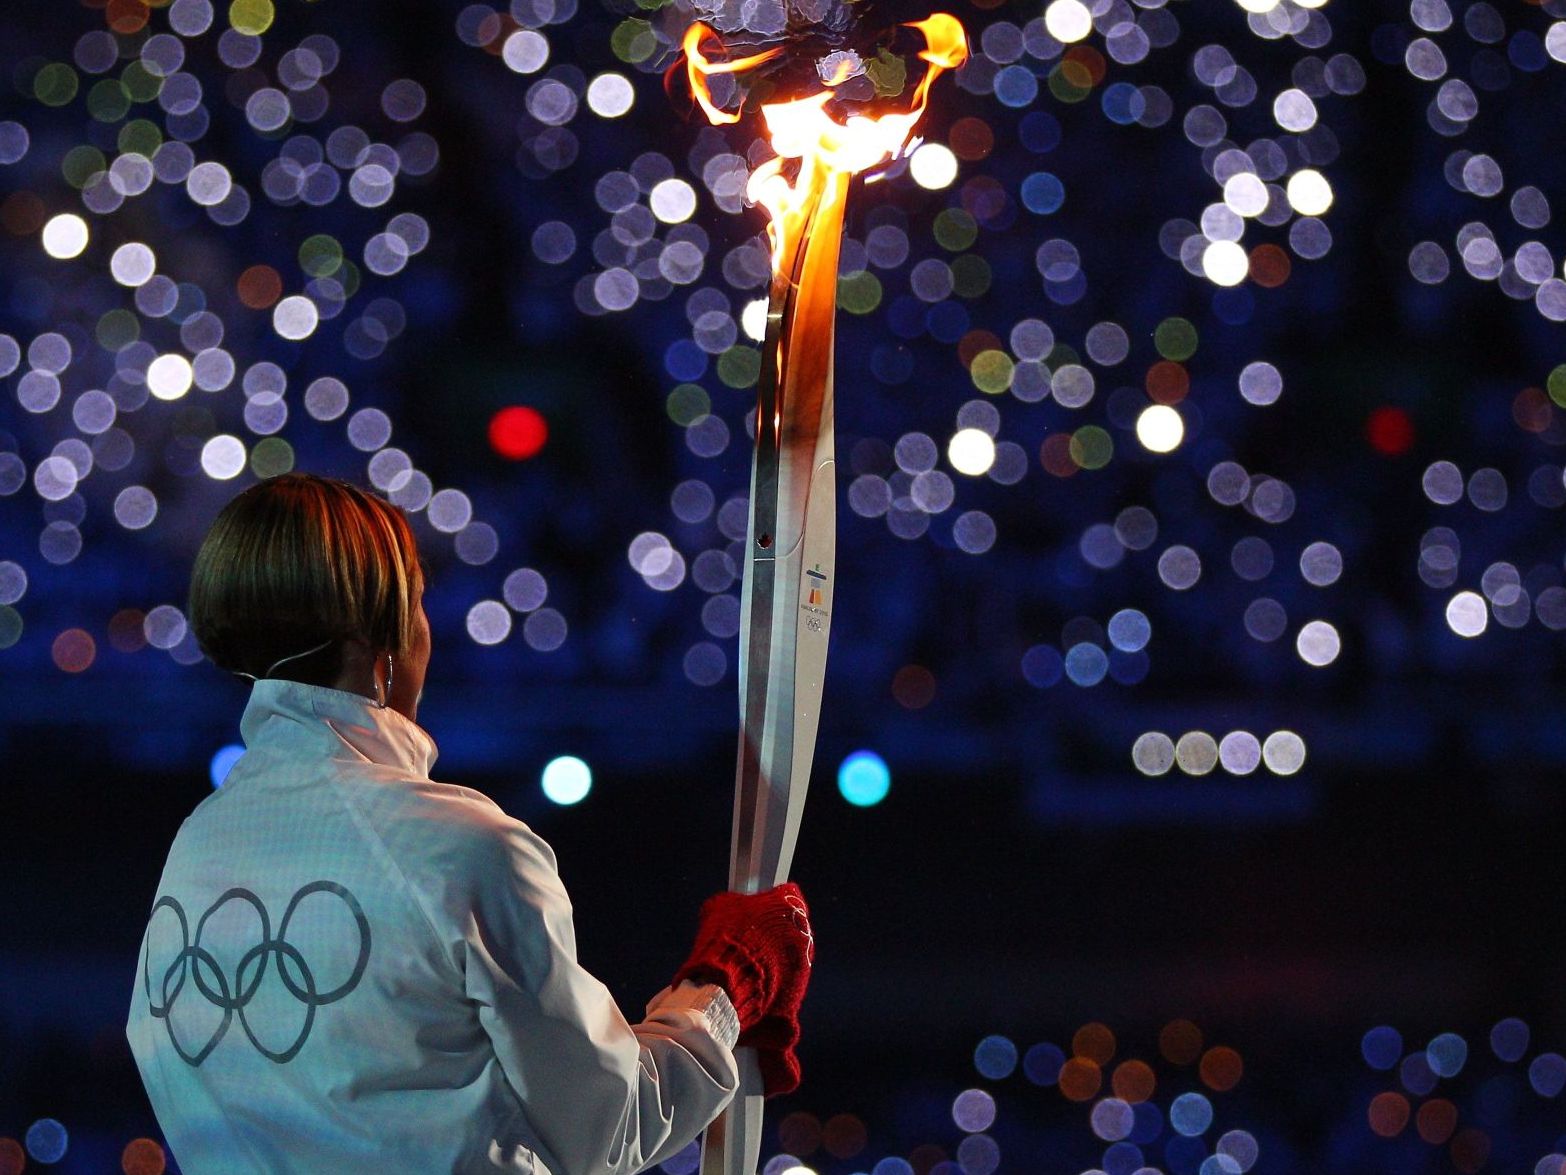 Fackellauf der Olympischen Spiele 2010